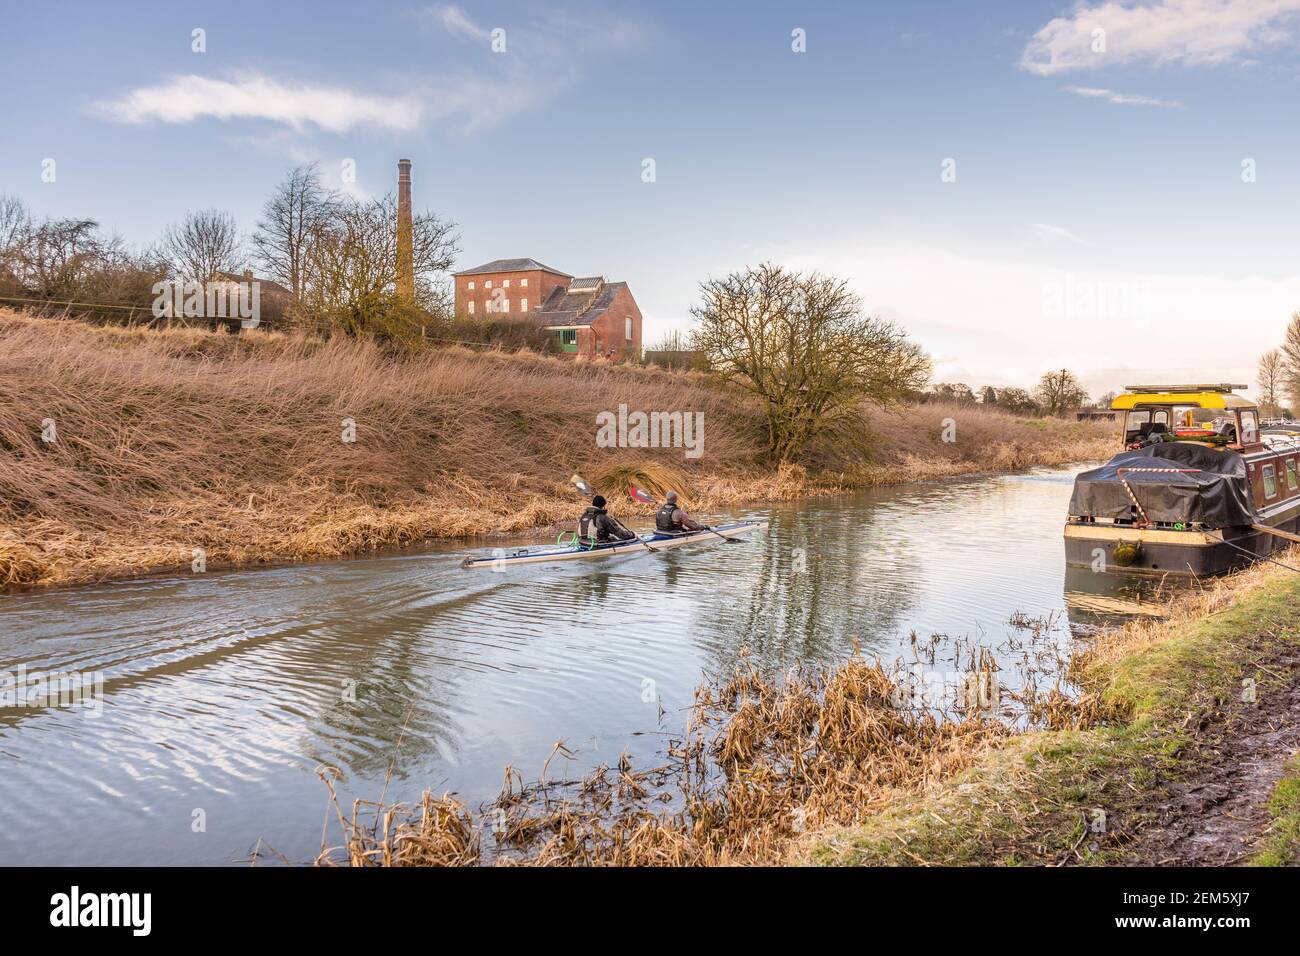 Leute Kanufahren auf dem Kennet und Avon Kanal in Wiltshire mit dem Crofton beam Motoren Pumpstation im Hintergrund, Wiltshire, England, Großbritannien Stockfoto